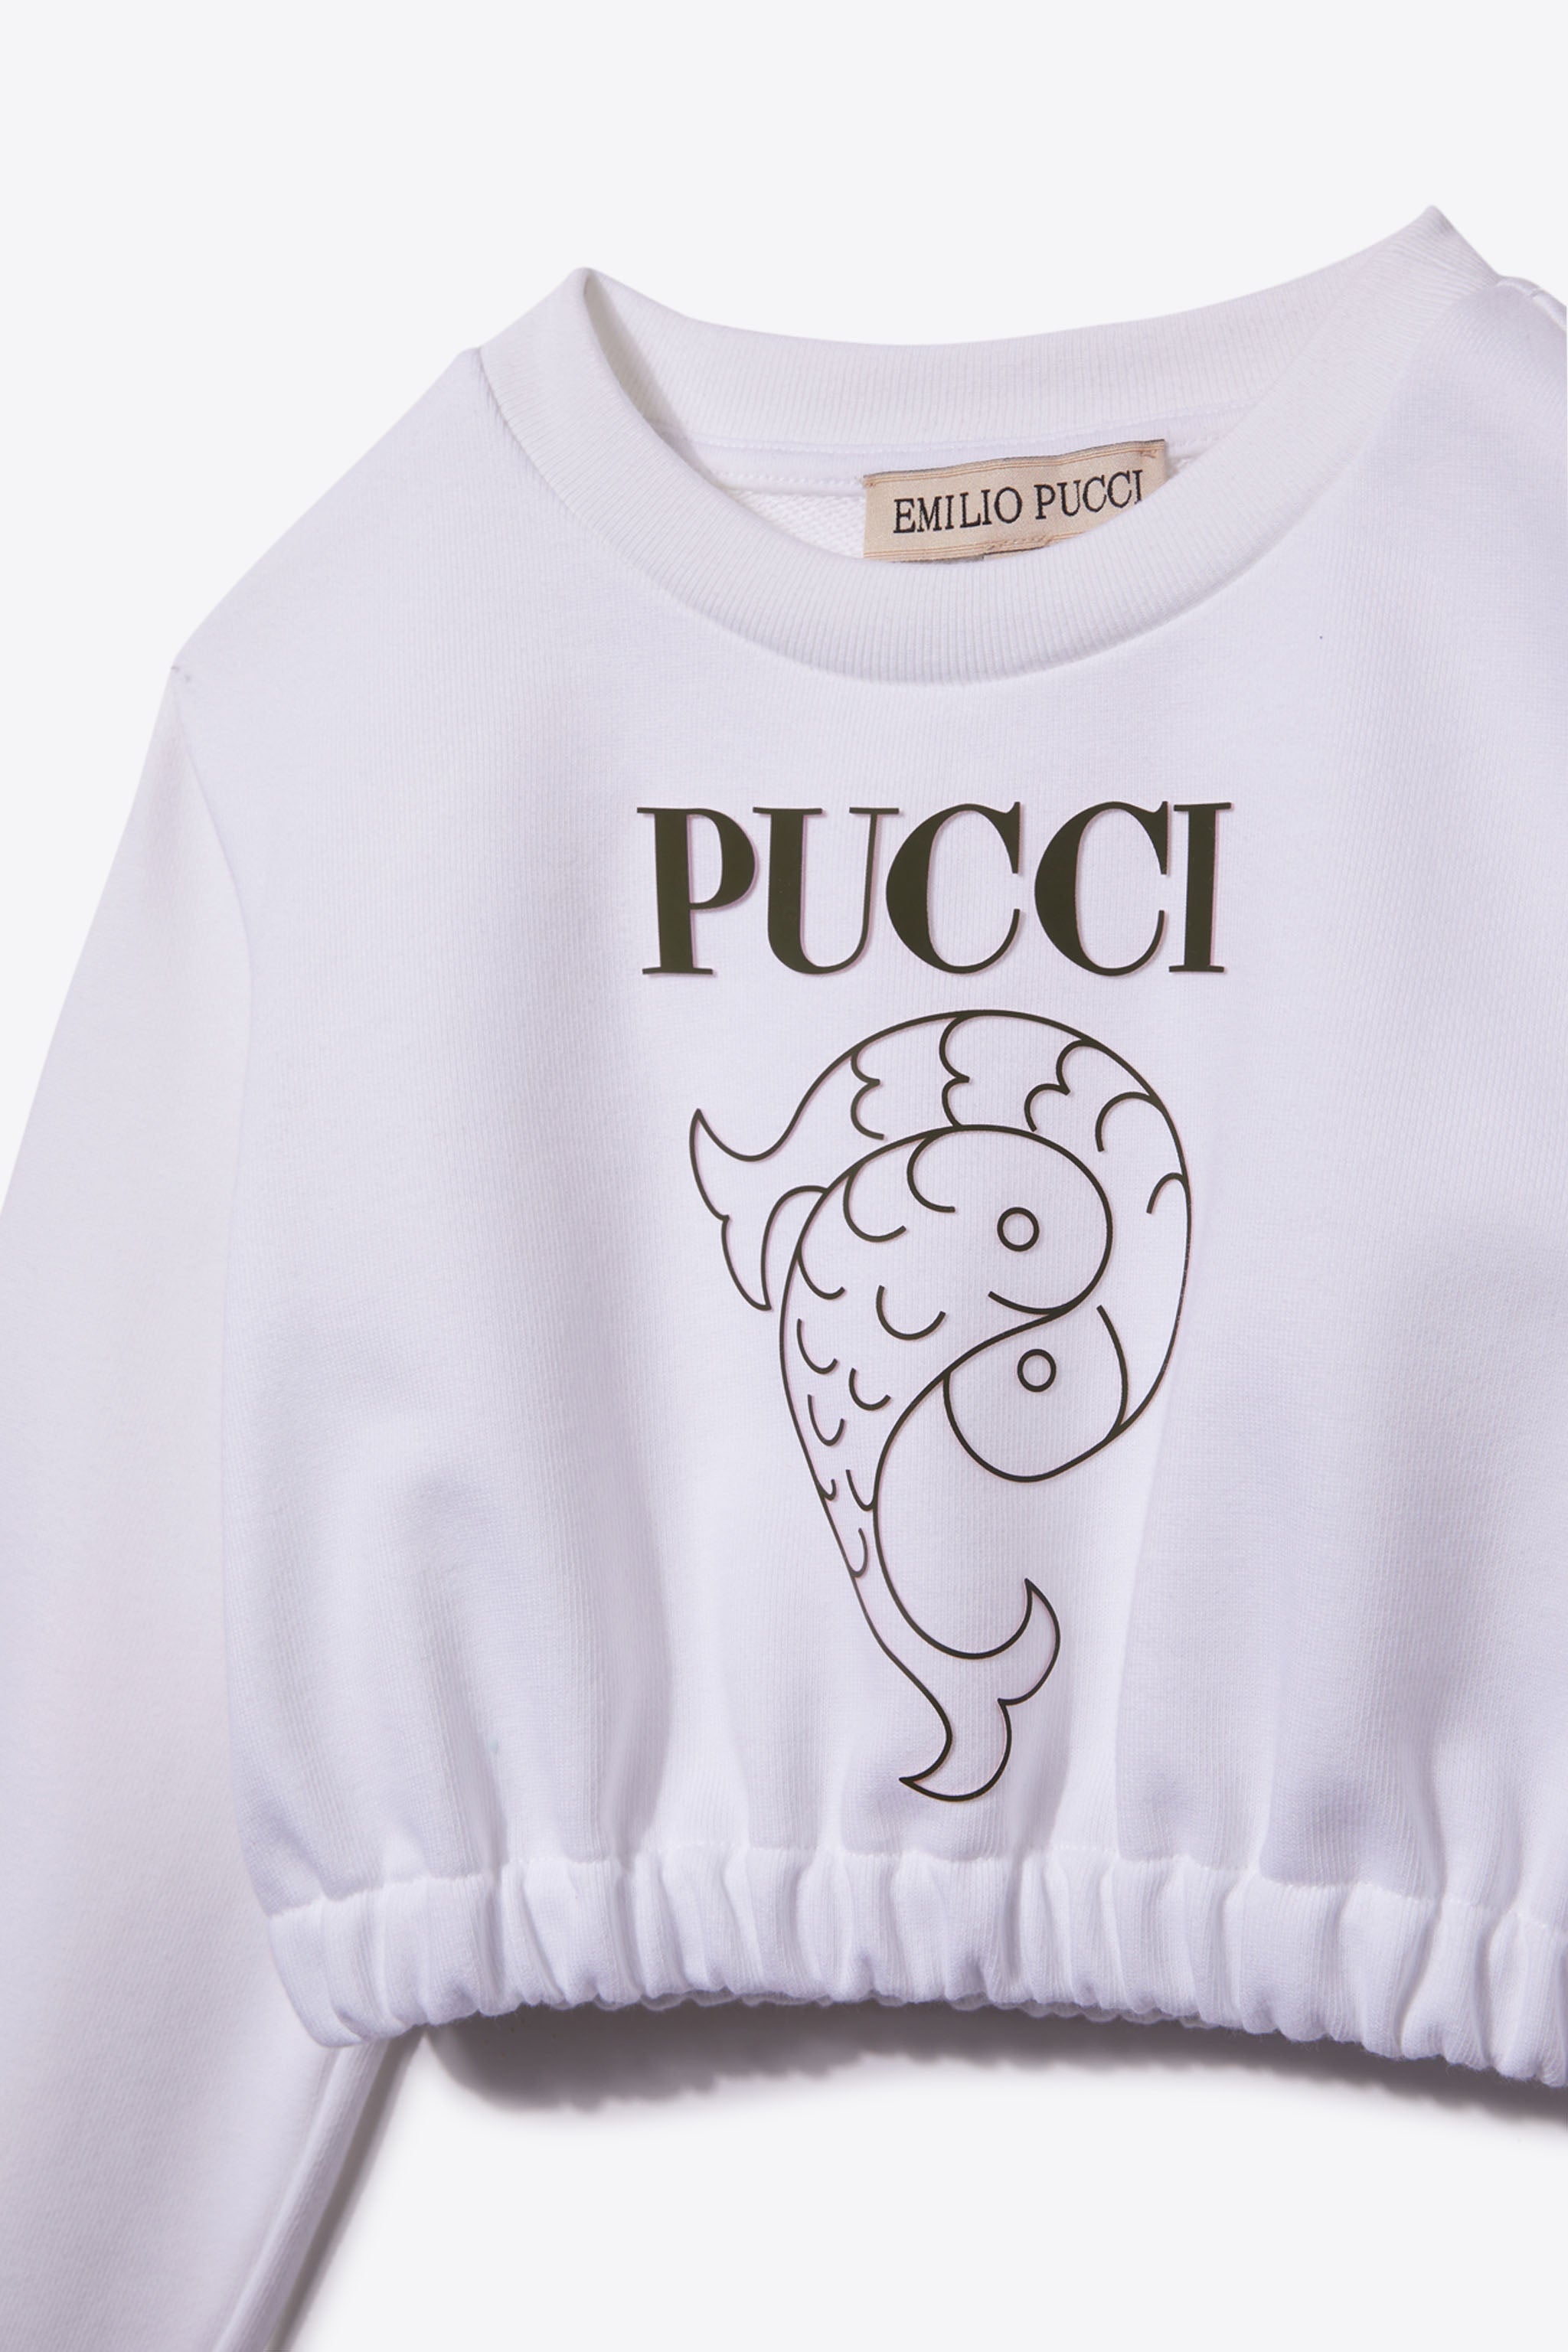 Pucci junior: designer childrenswear | Pucci